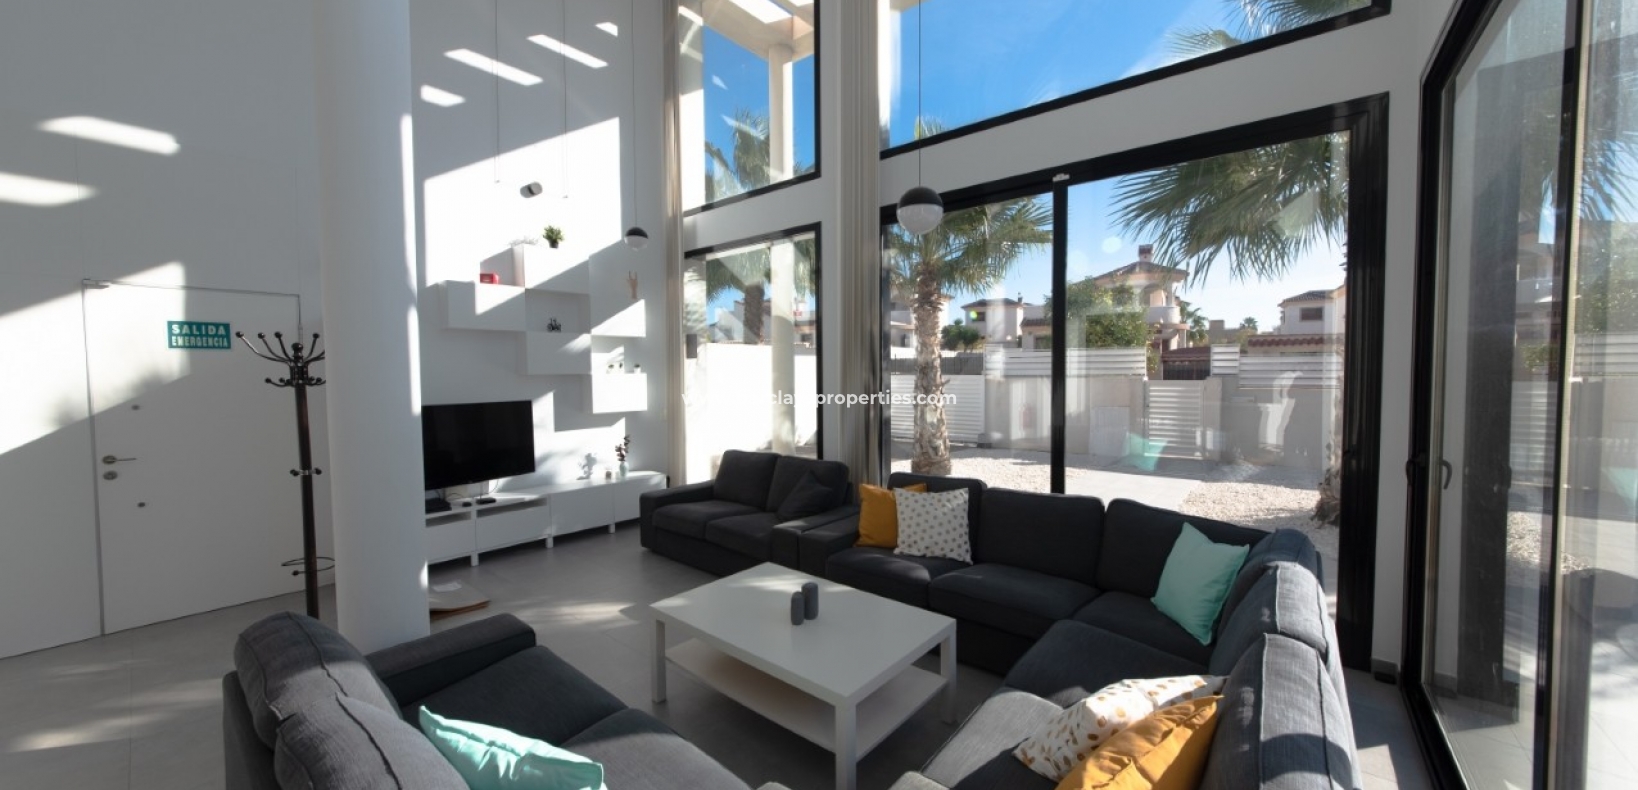 Sala de estar - Chalet Obra nueva en venta en Urb La Marina